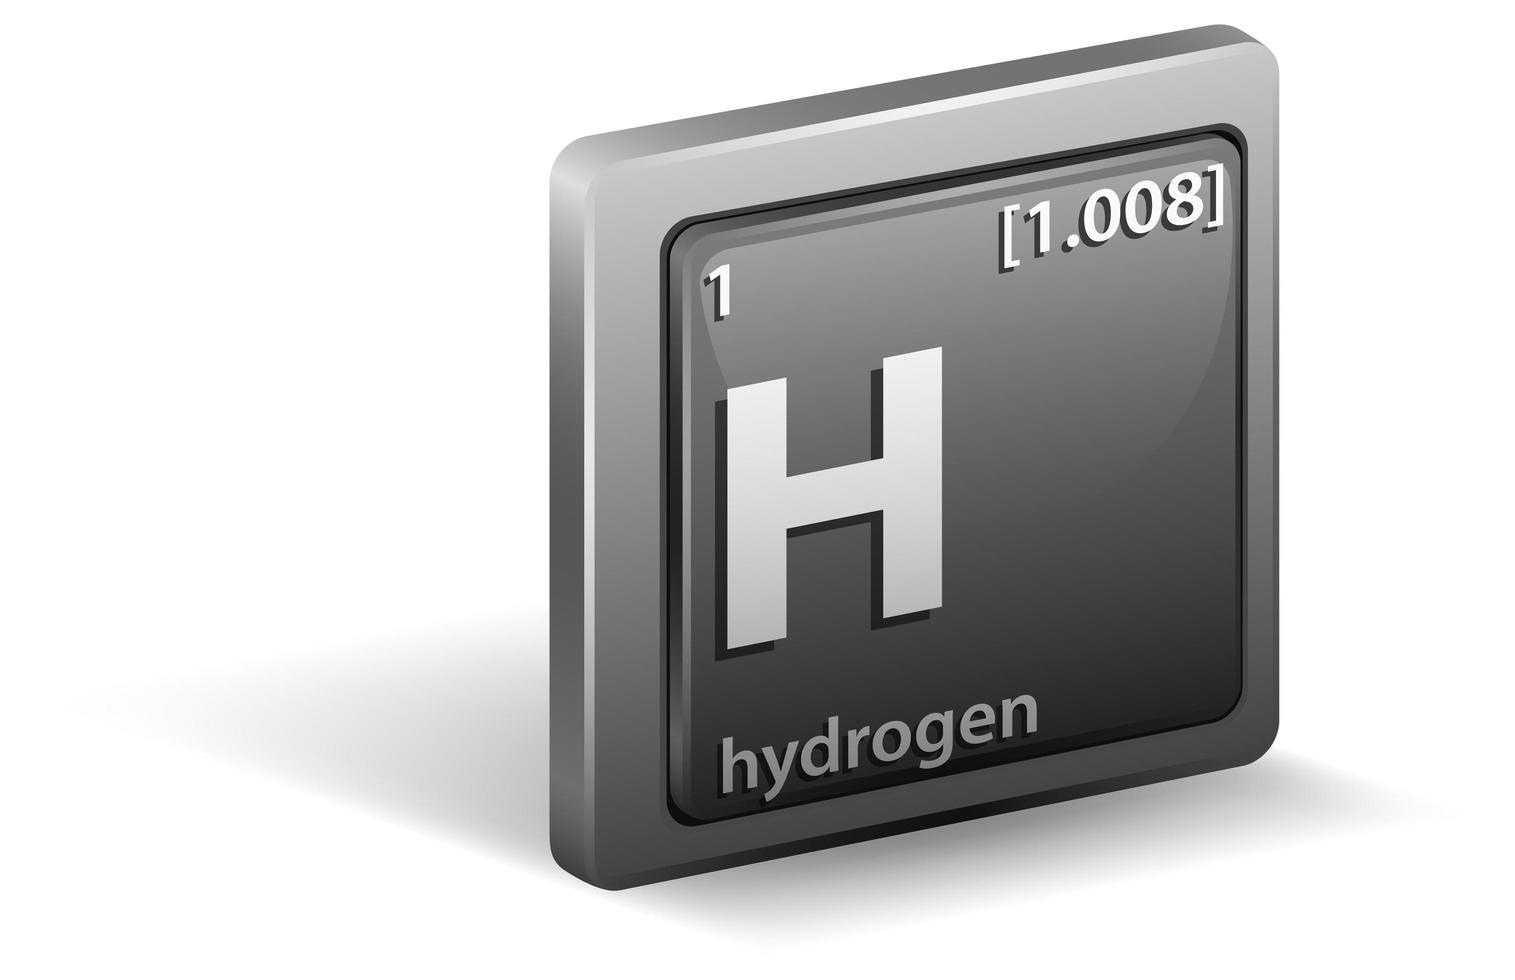 elemento químico de hidrogênio. símbolo químico com número atômico e massa atômica. vetor